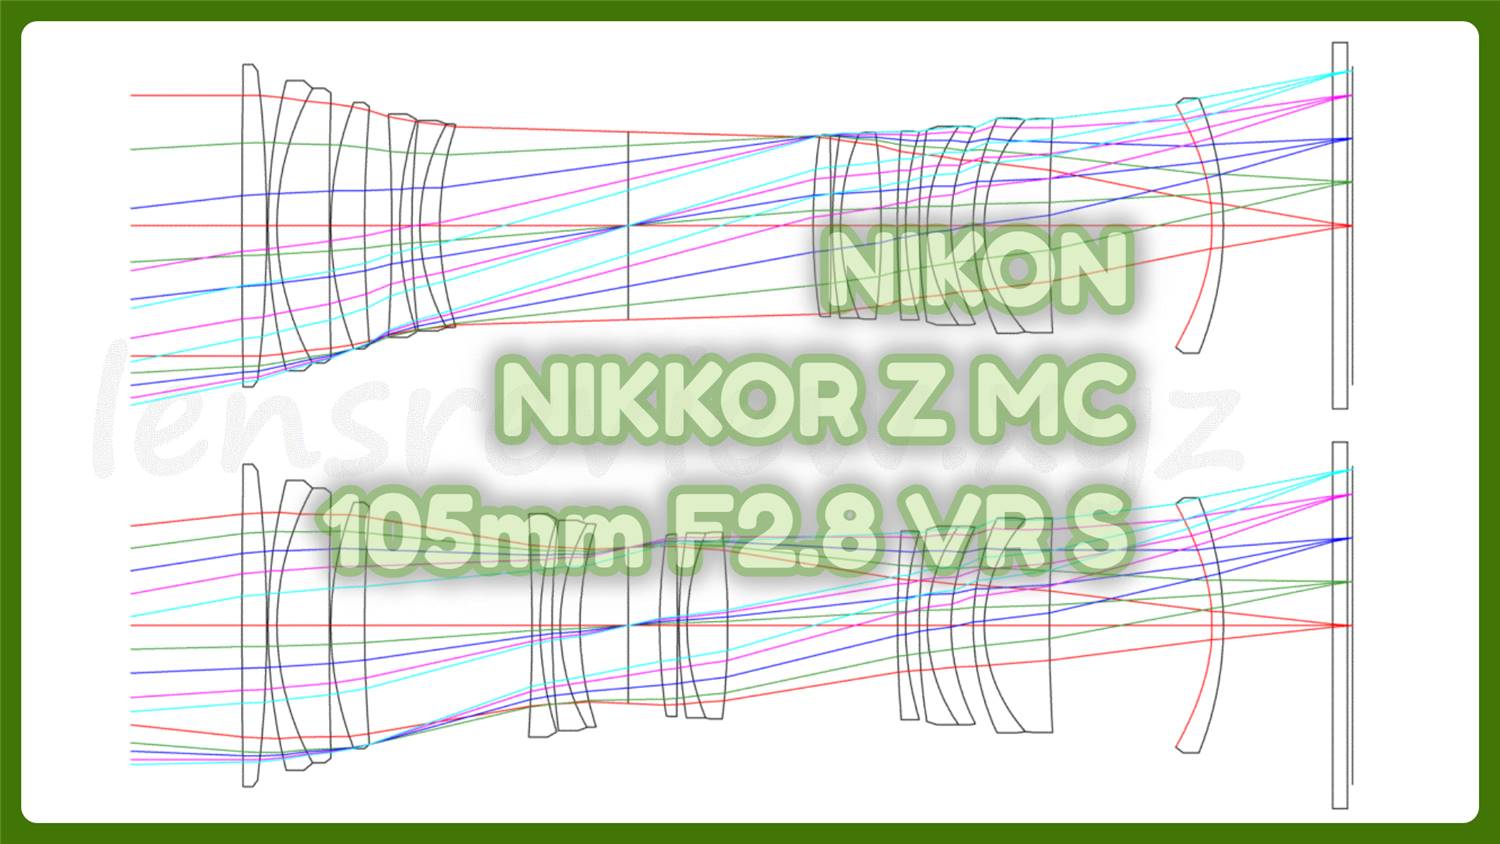 レンズ性能評価】NIKON NIKKOR Z MC 105mm F2.8 VR S -分析098 - LENS 